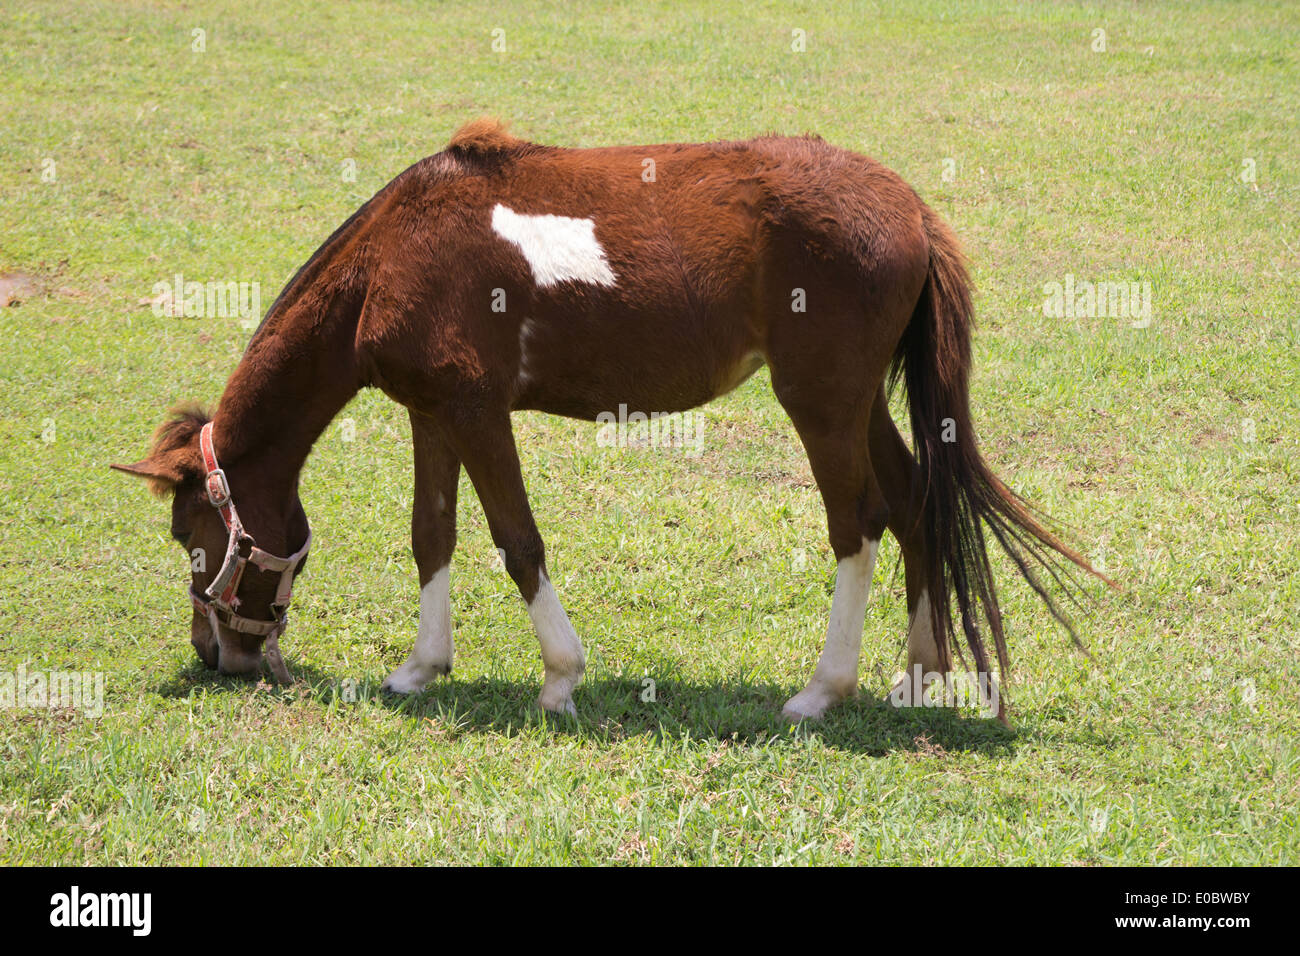 Jeune cheval brun mange de l'herbe Banque D'Images